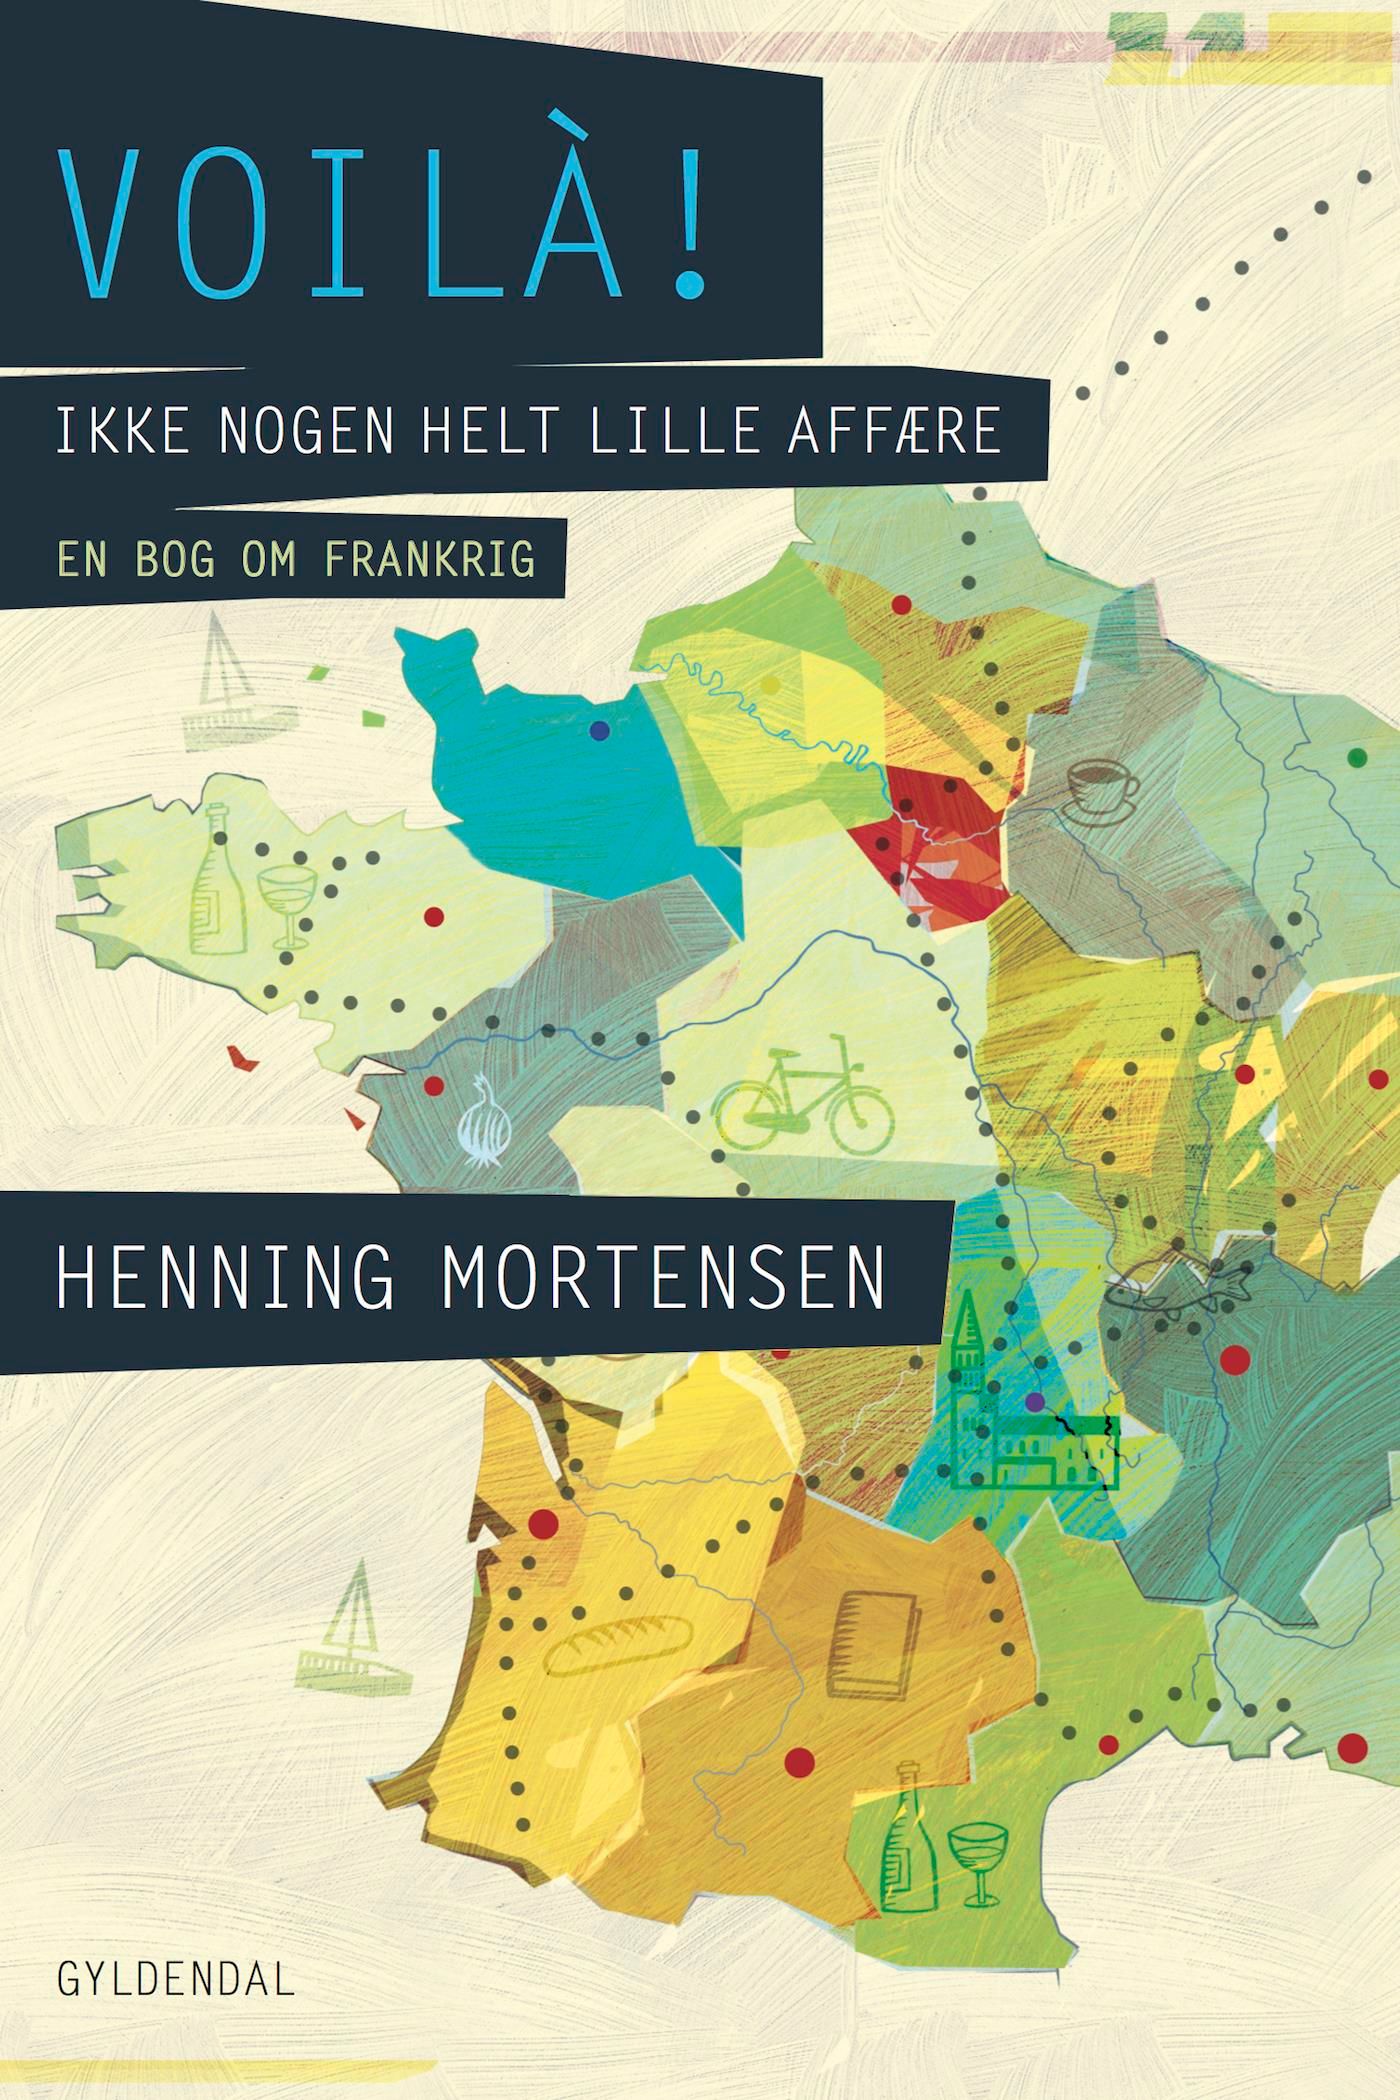 Voilà, eBook by Henning Mortensen